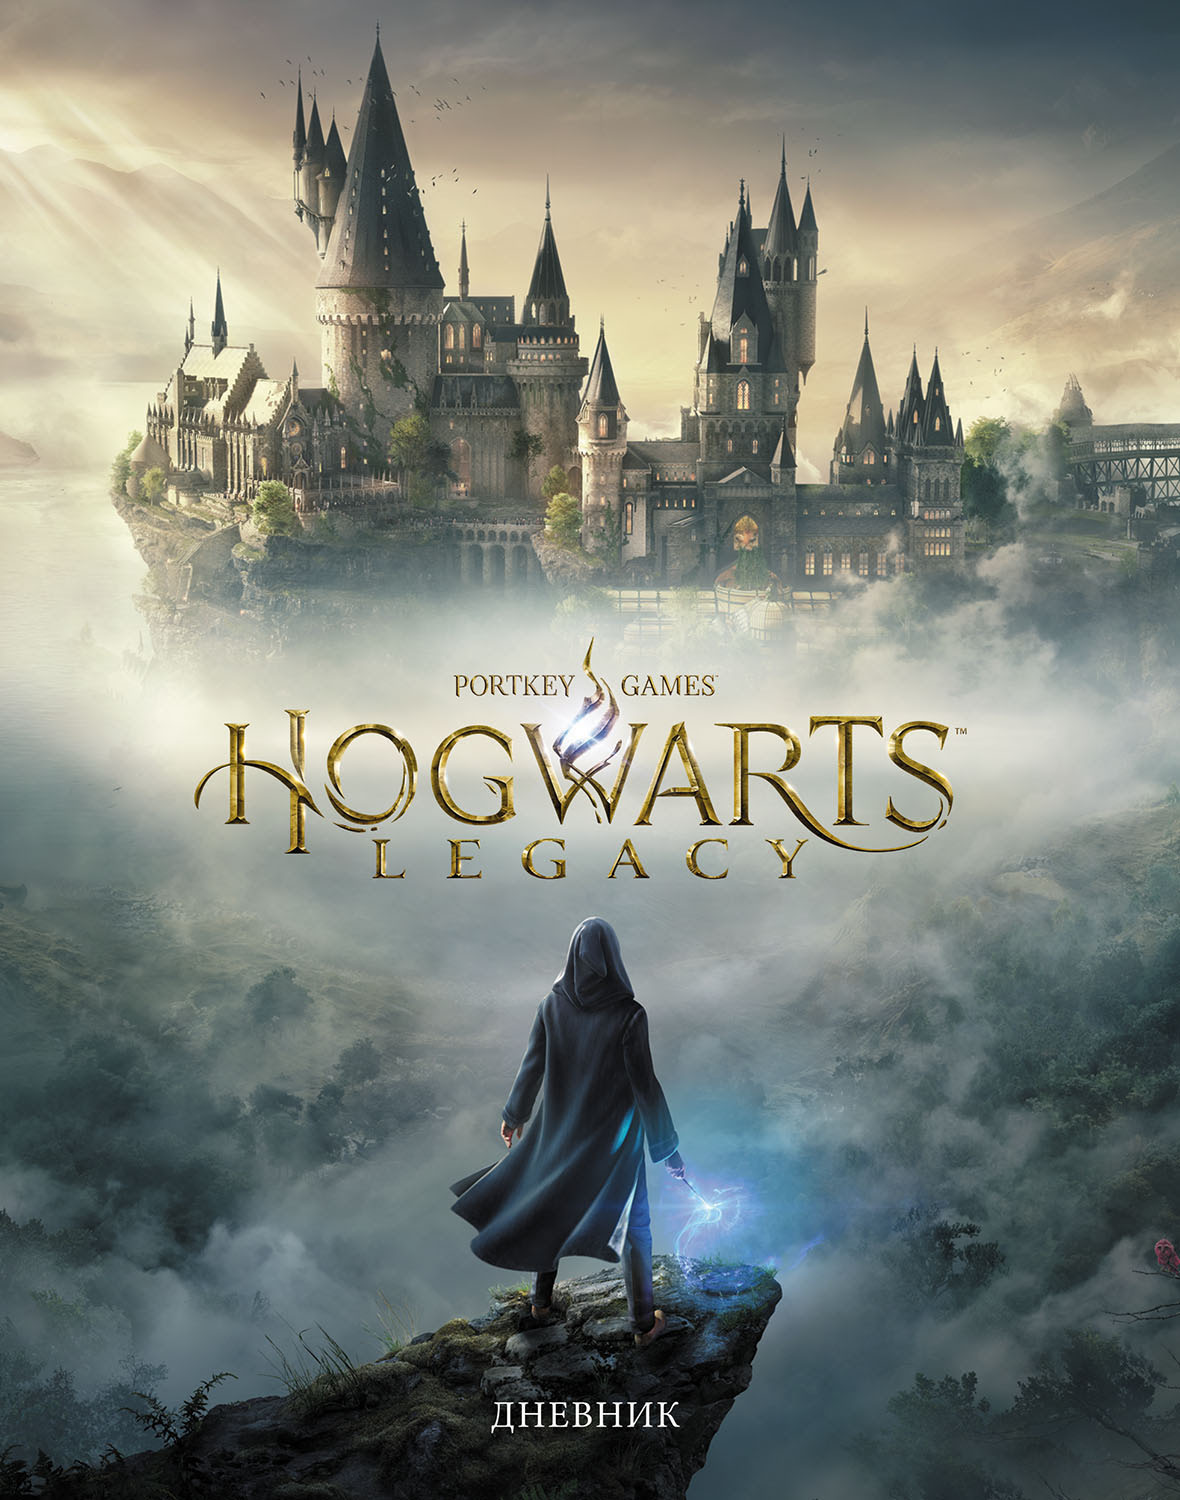 Дневник 1-11 кл. тв. обл. "Лиценз" Гарри Поттер-Hogwarts Legacy" 40л глянц. ламинация Hatber